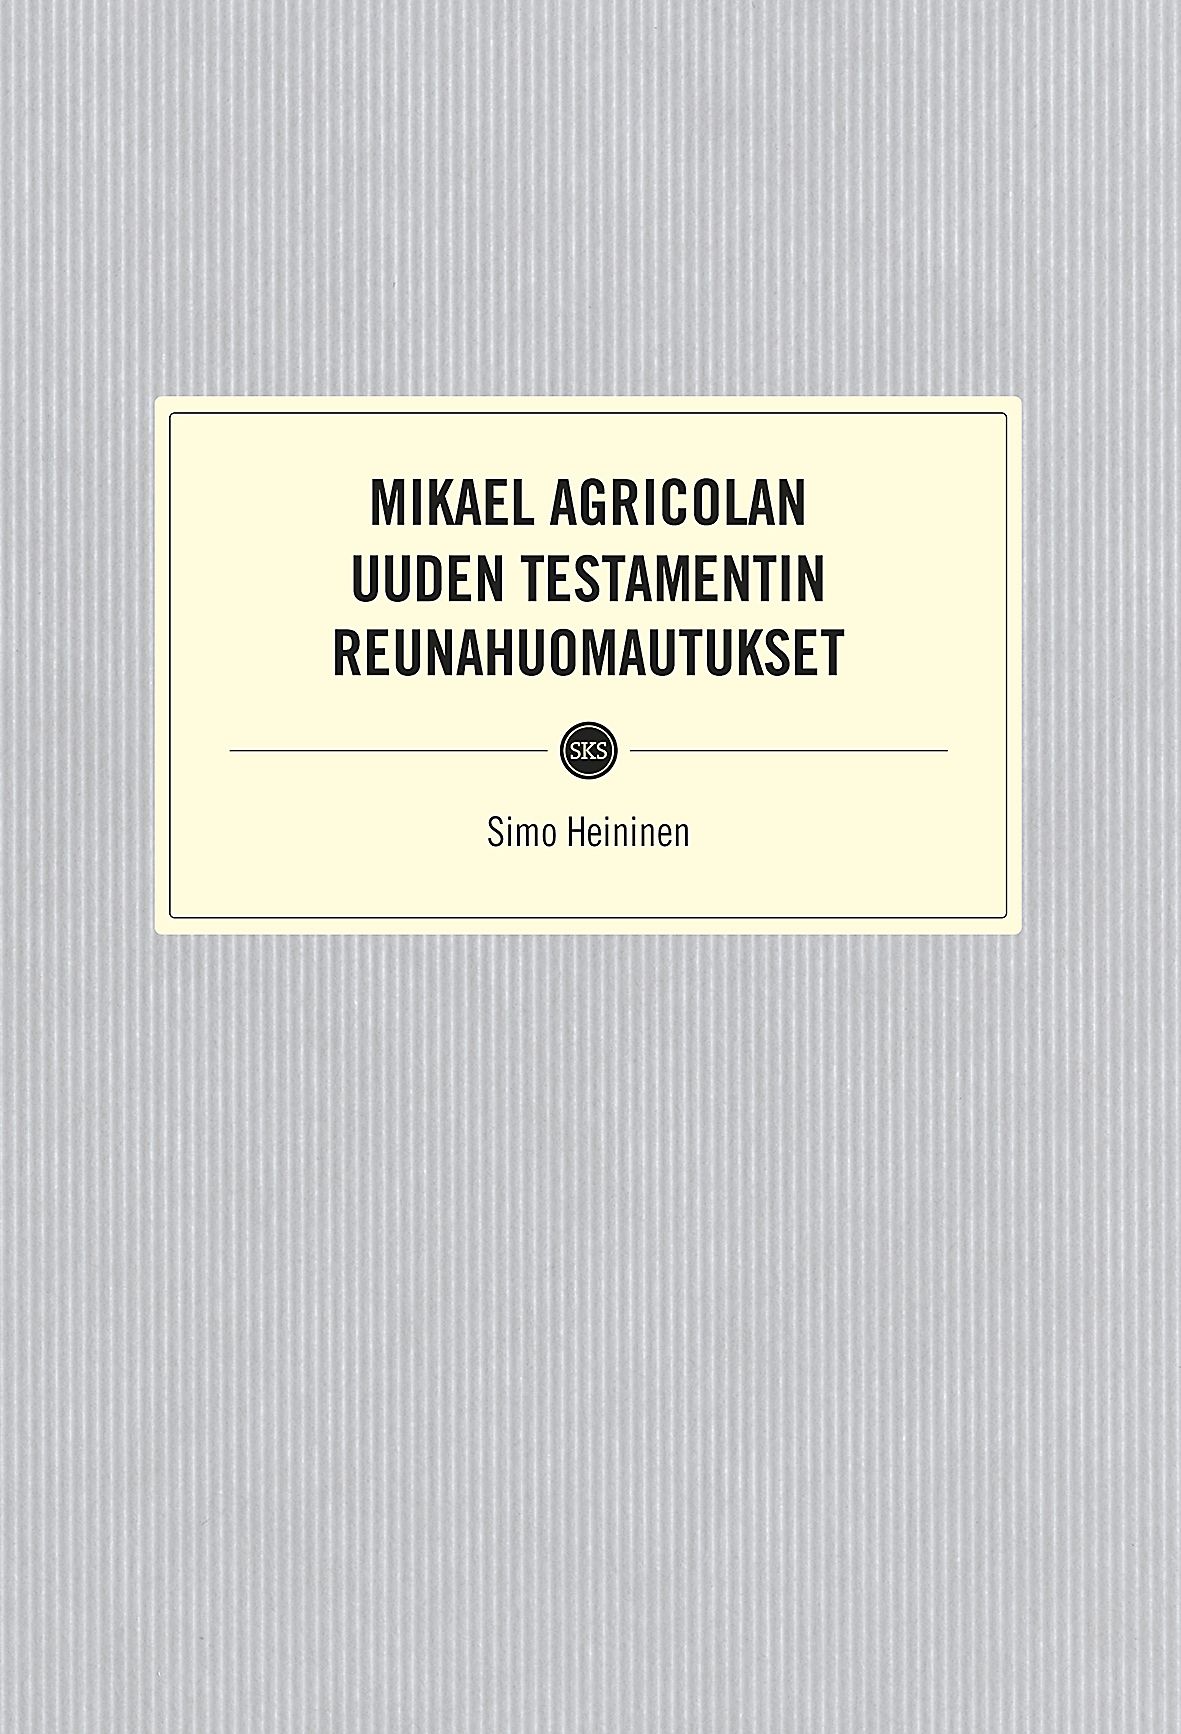 Simo Heininen : Mikael Agricolan Uuden testamentin reunahuomautukset